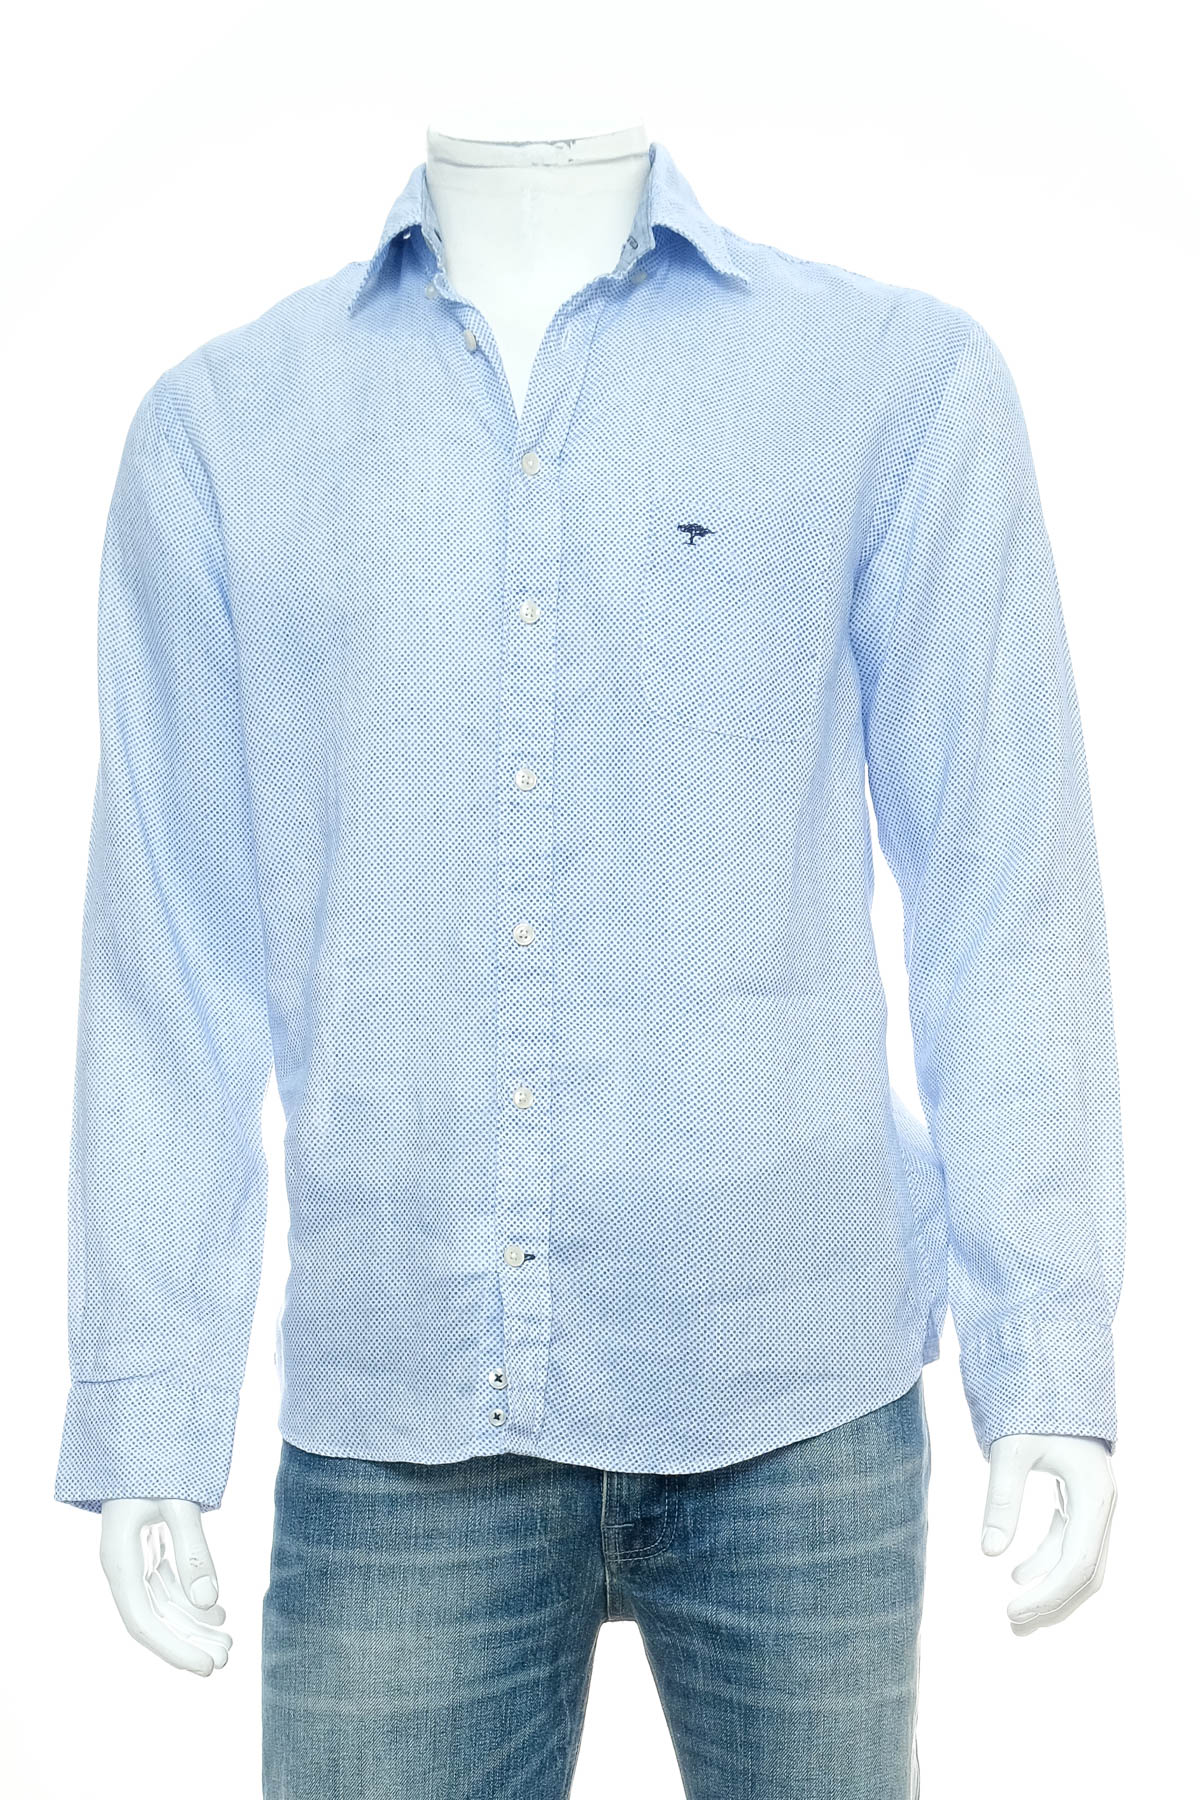 Ανδρικό πουκάμισο - Fynch Hatton - 0